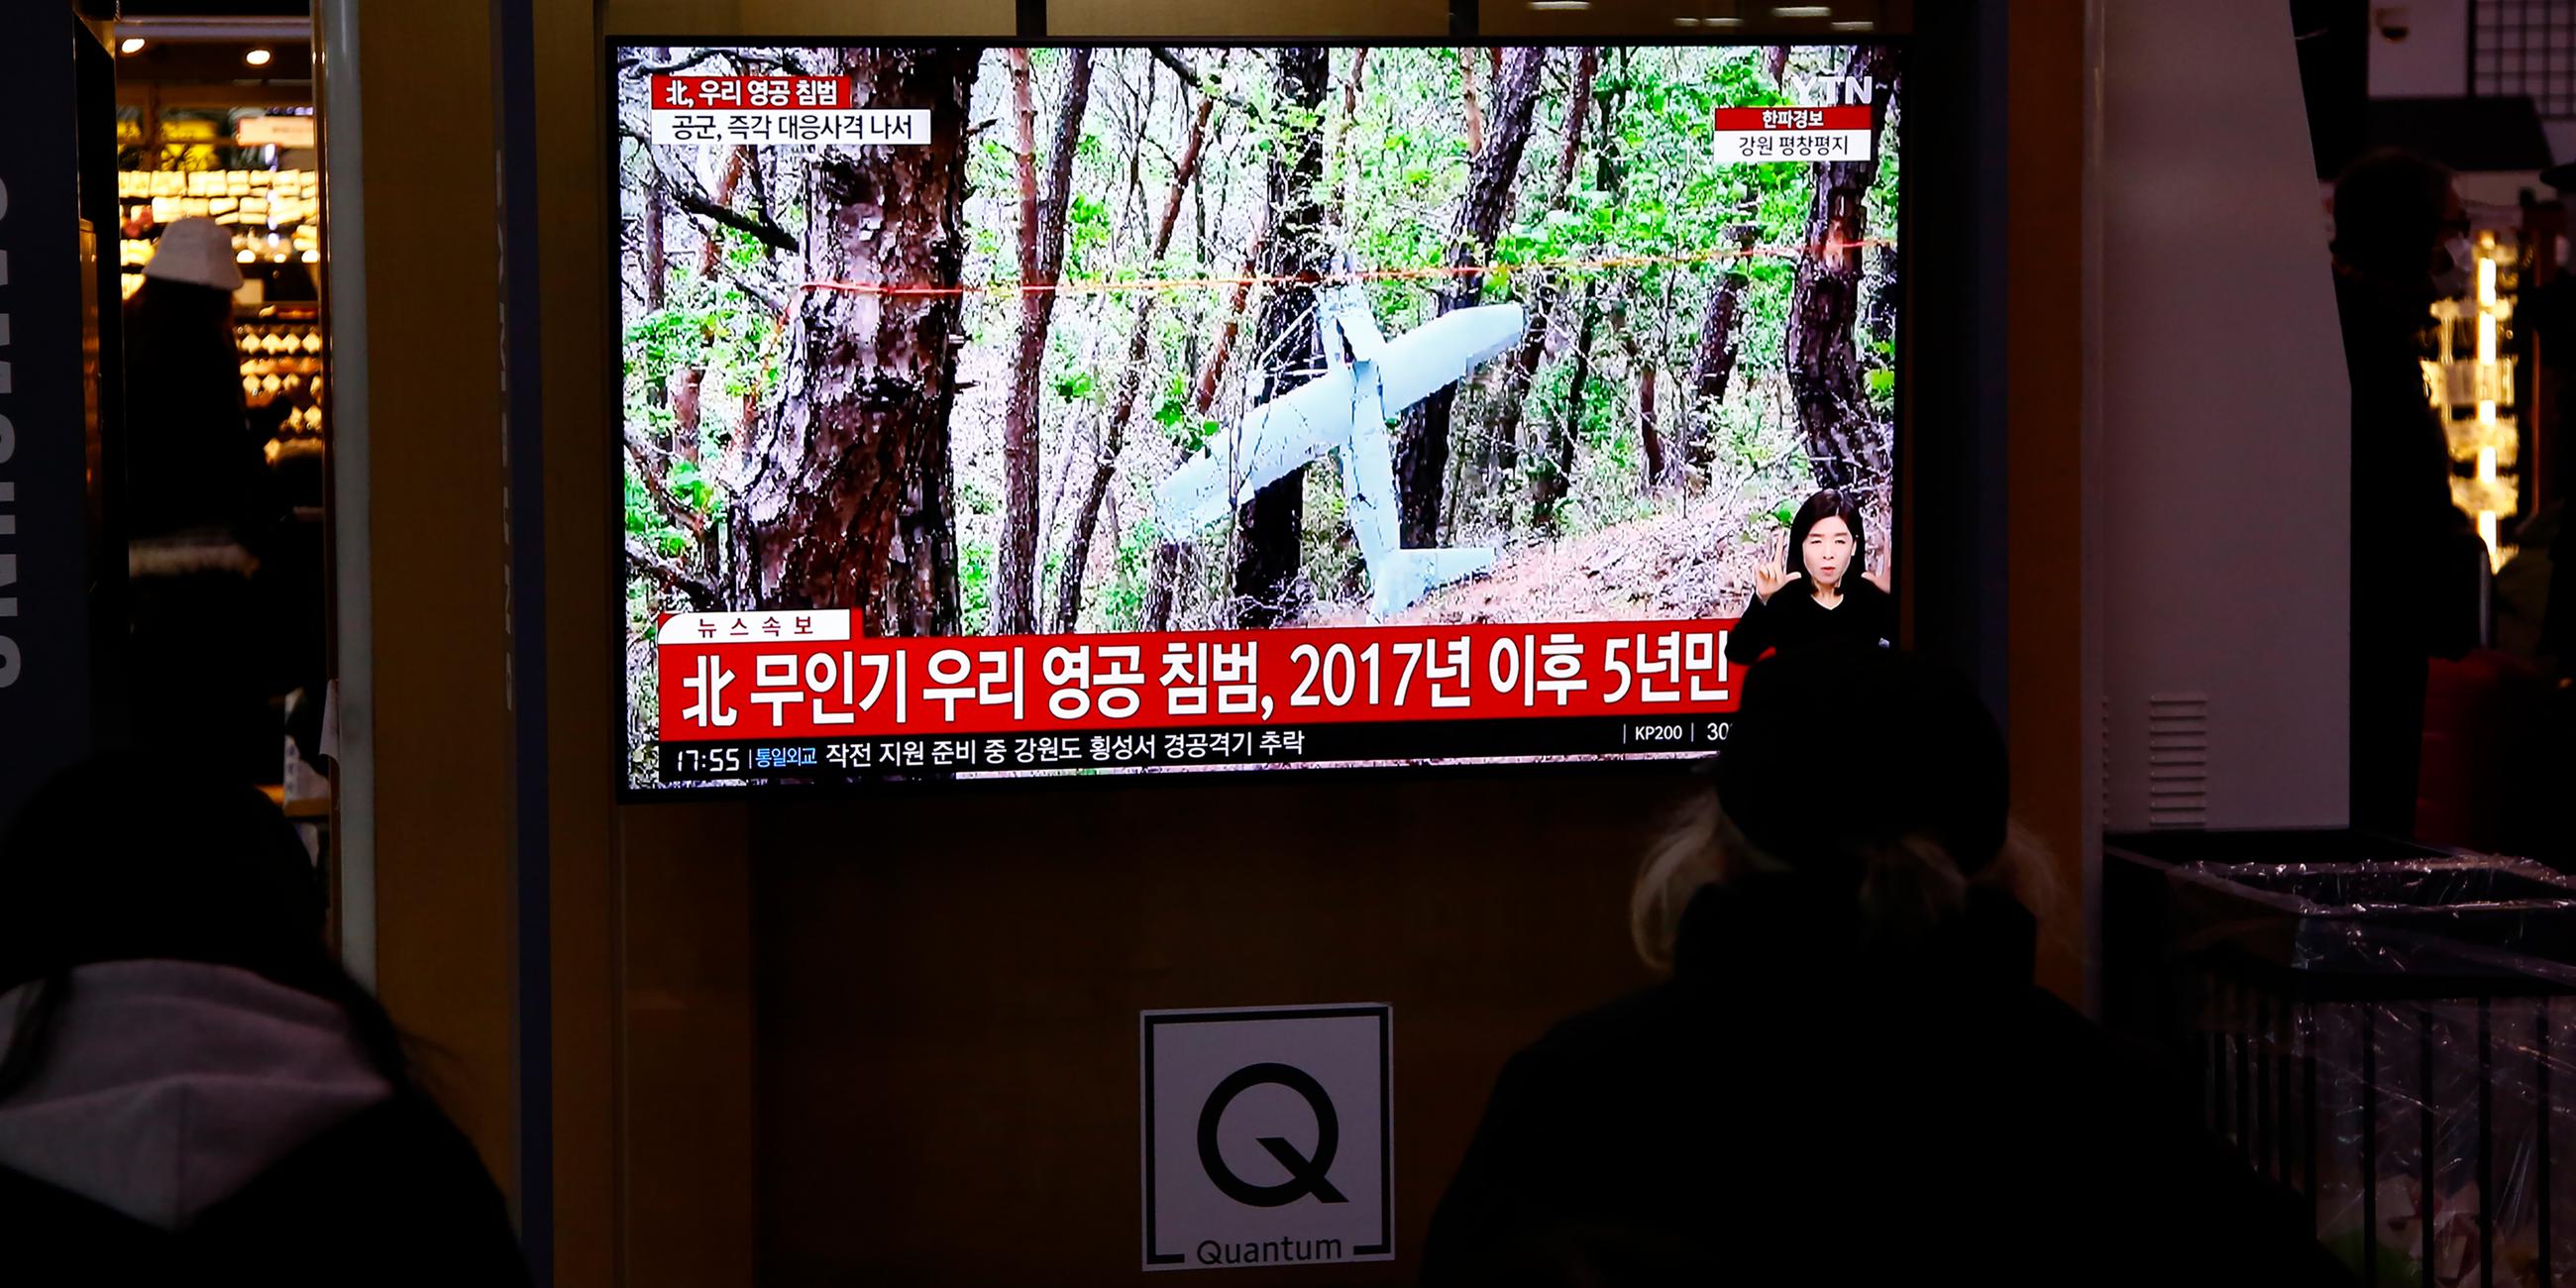 Menschen sehen TV-Nachrichten an einem öffentlichen Bildschirm in Seoul.